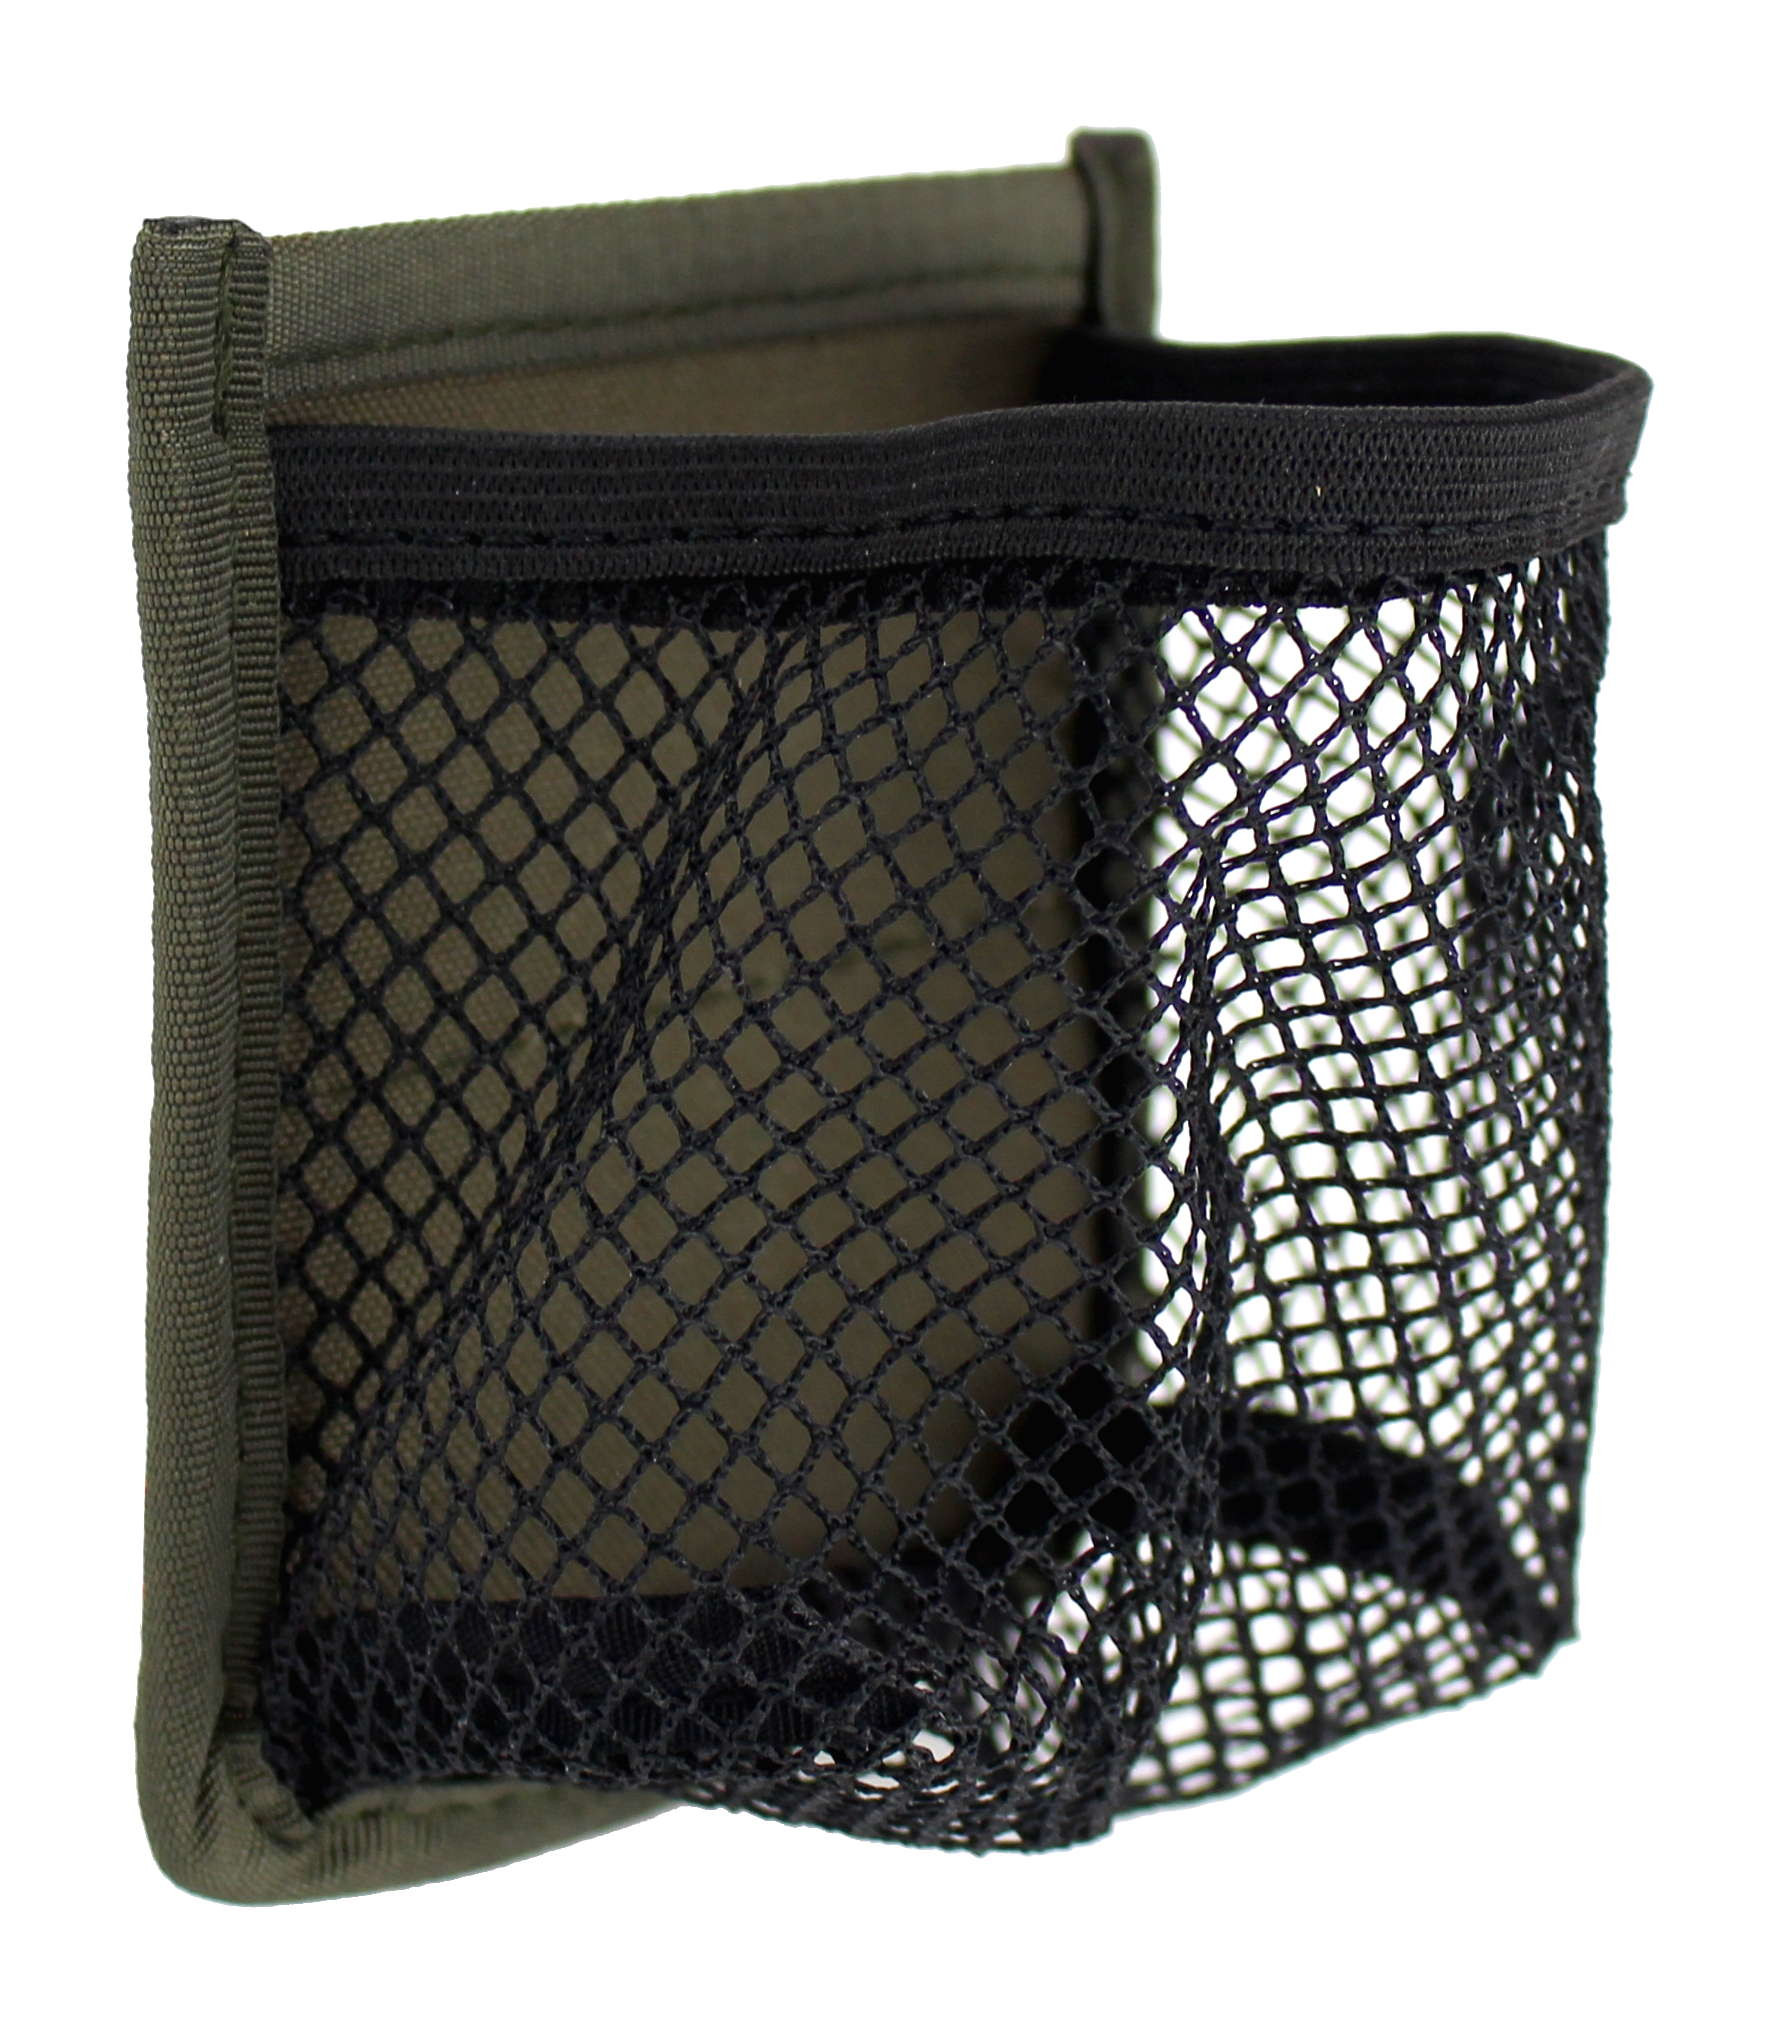 Netztasche zum einkletten Grundfläche von 10x10 cm, Packmaß 8x8x8cm